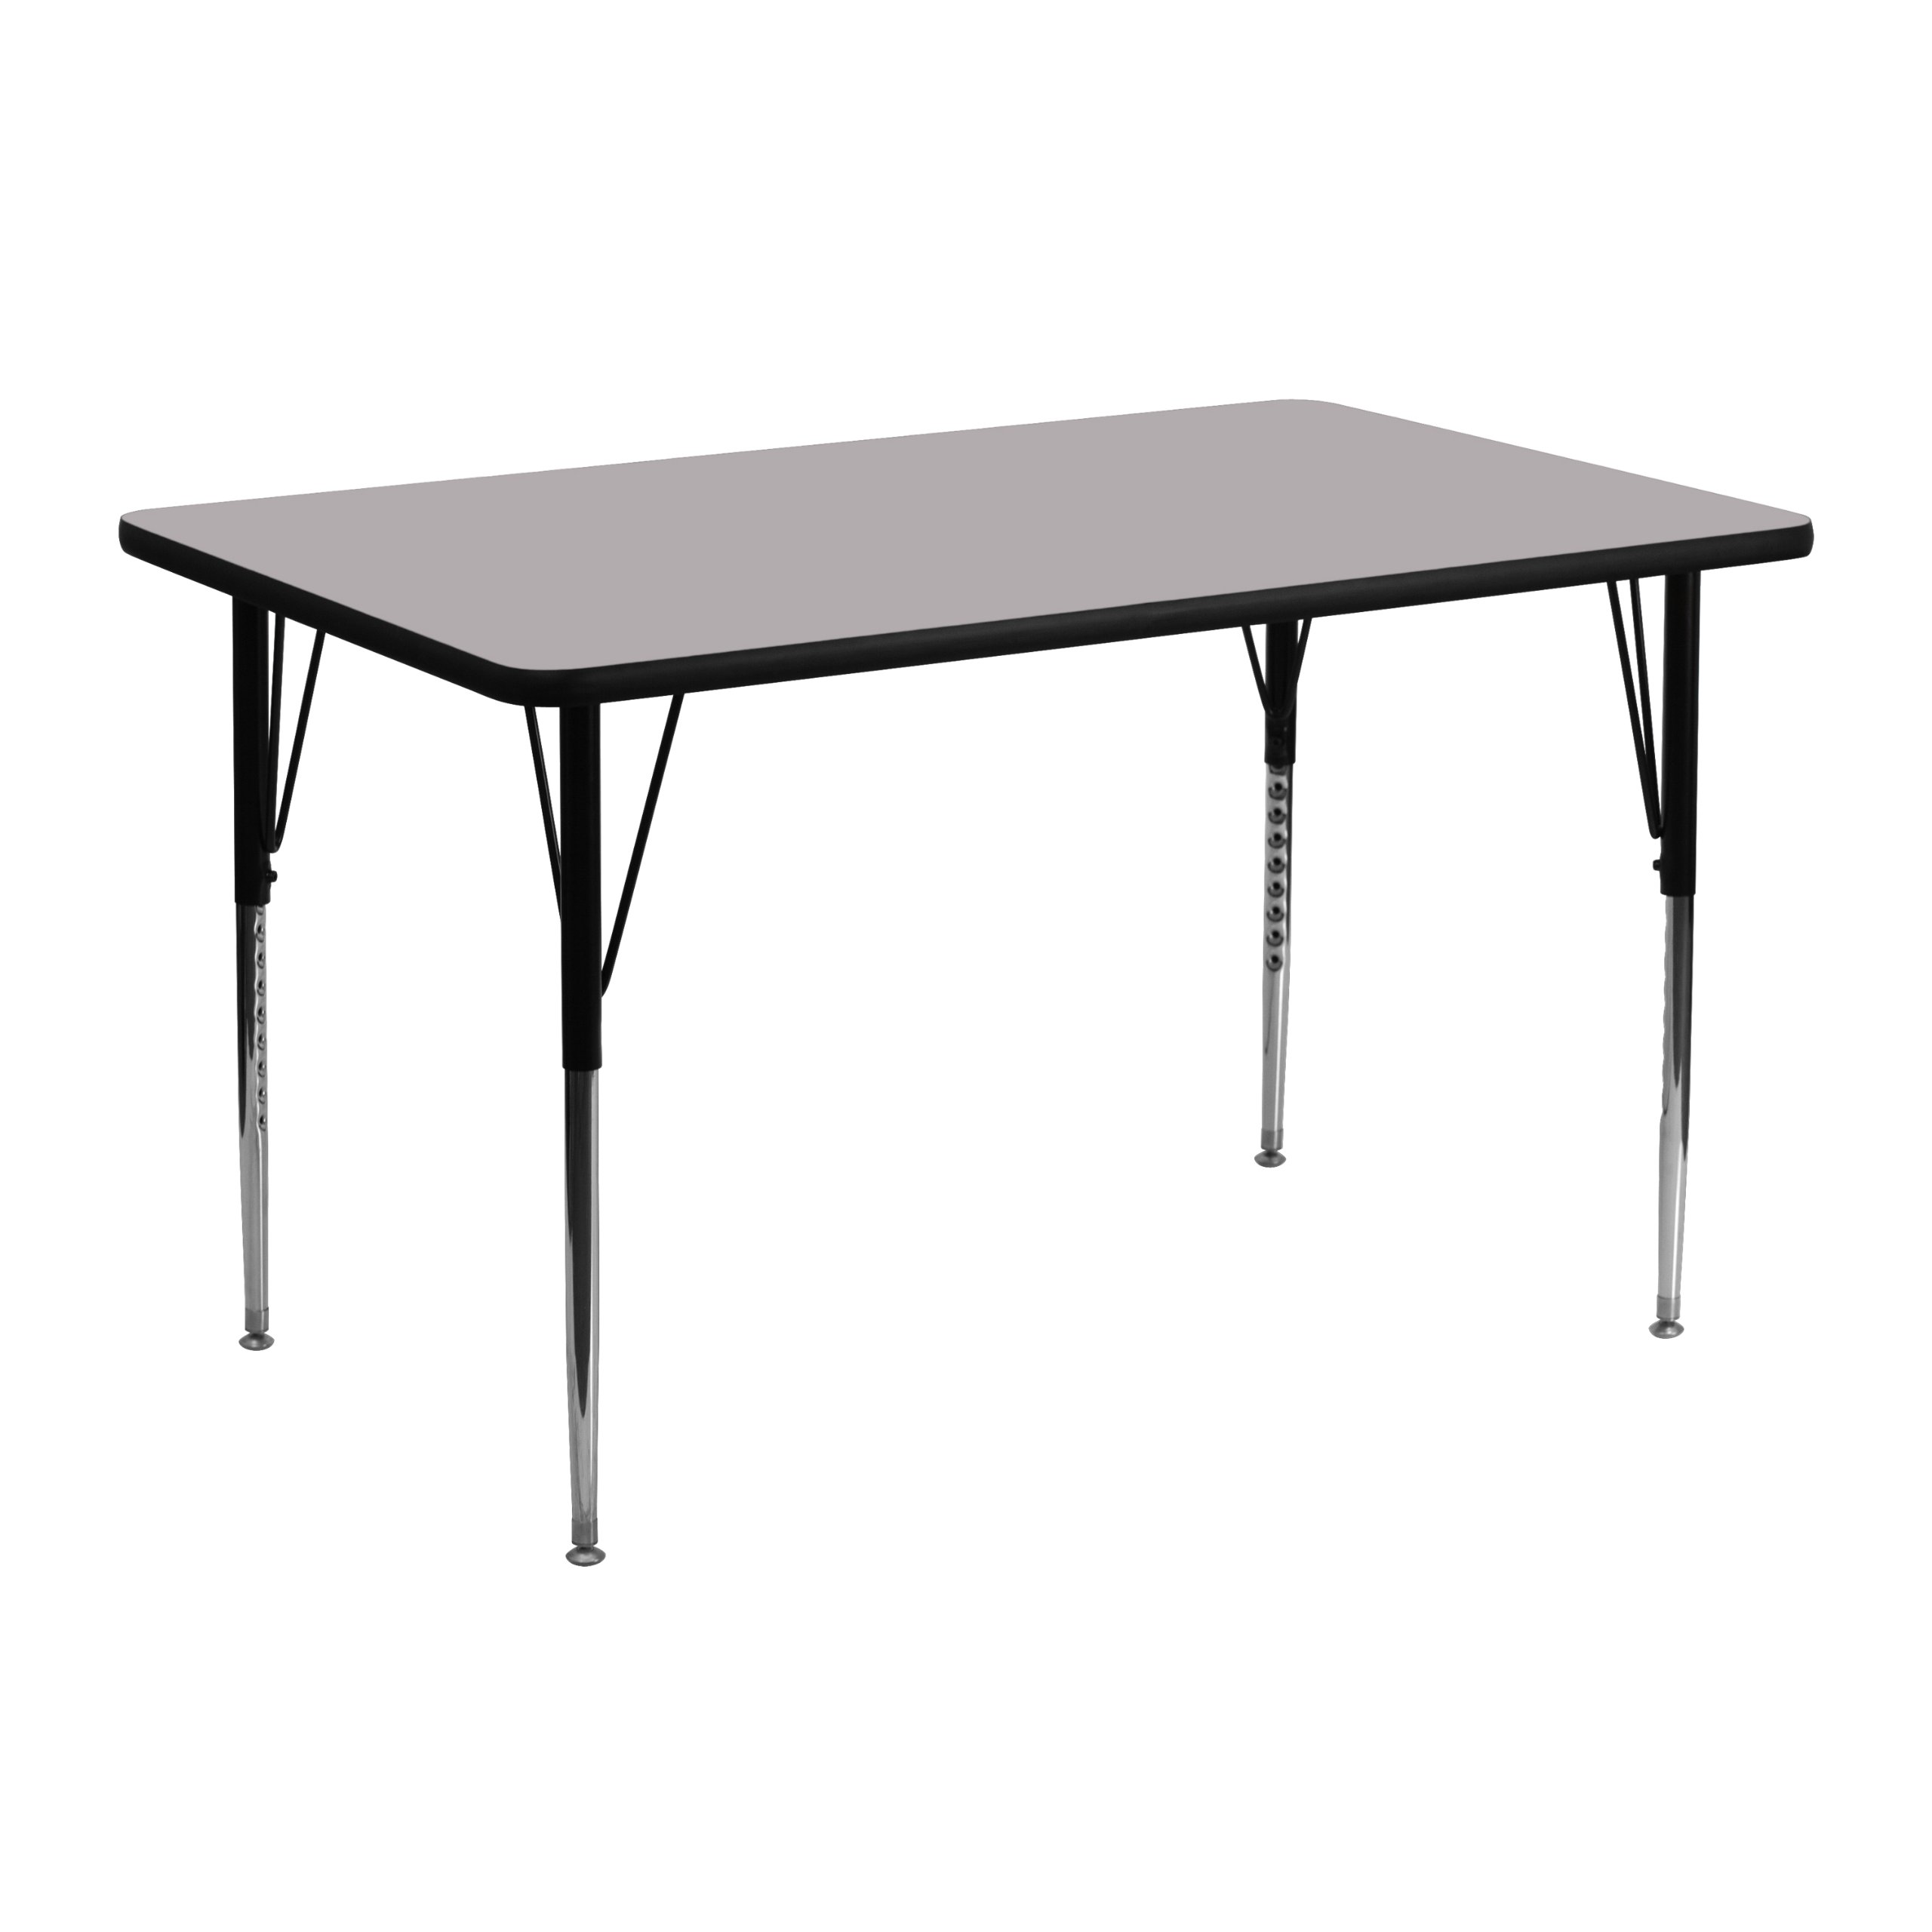 Flash Furniture 24 Mesa de actividades rectangular con tapa de laminado termofundido gris/patas ajustables en altura estándar